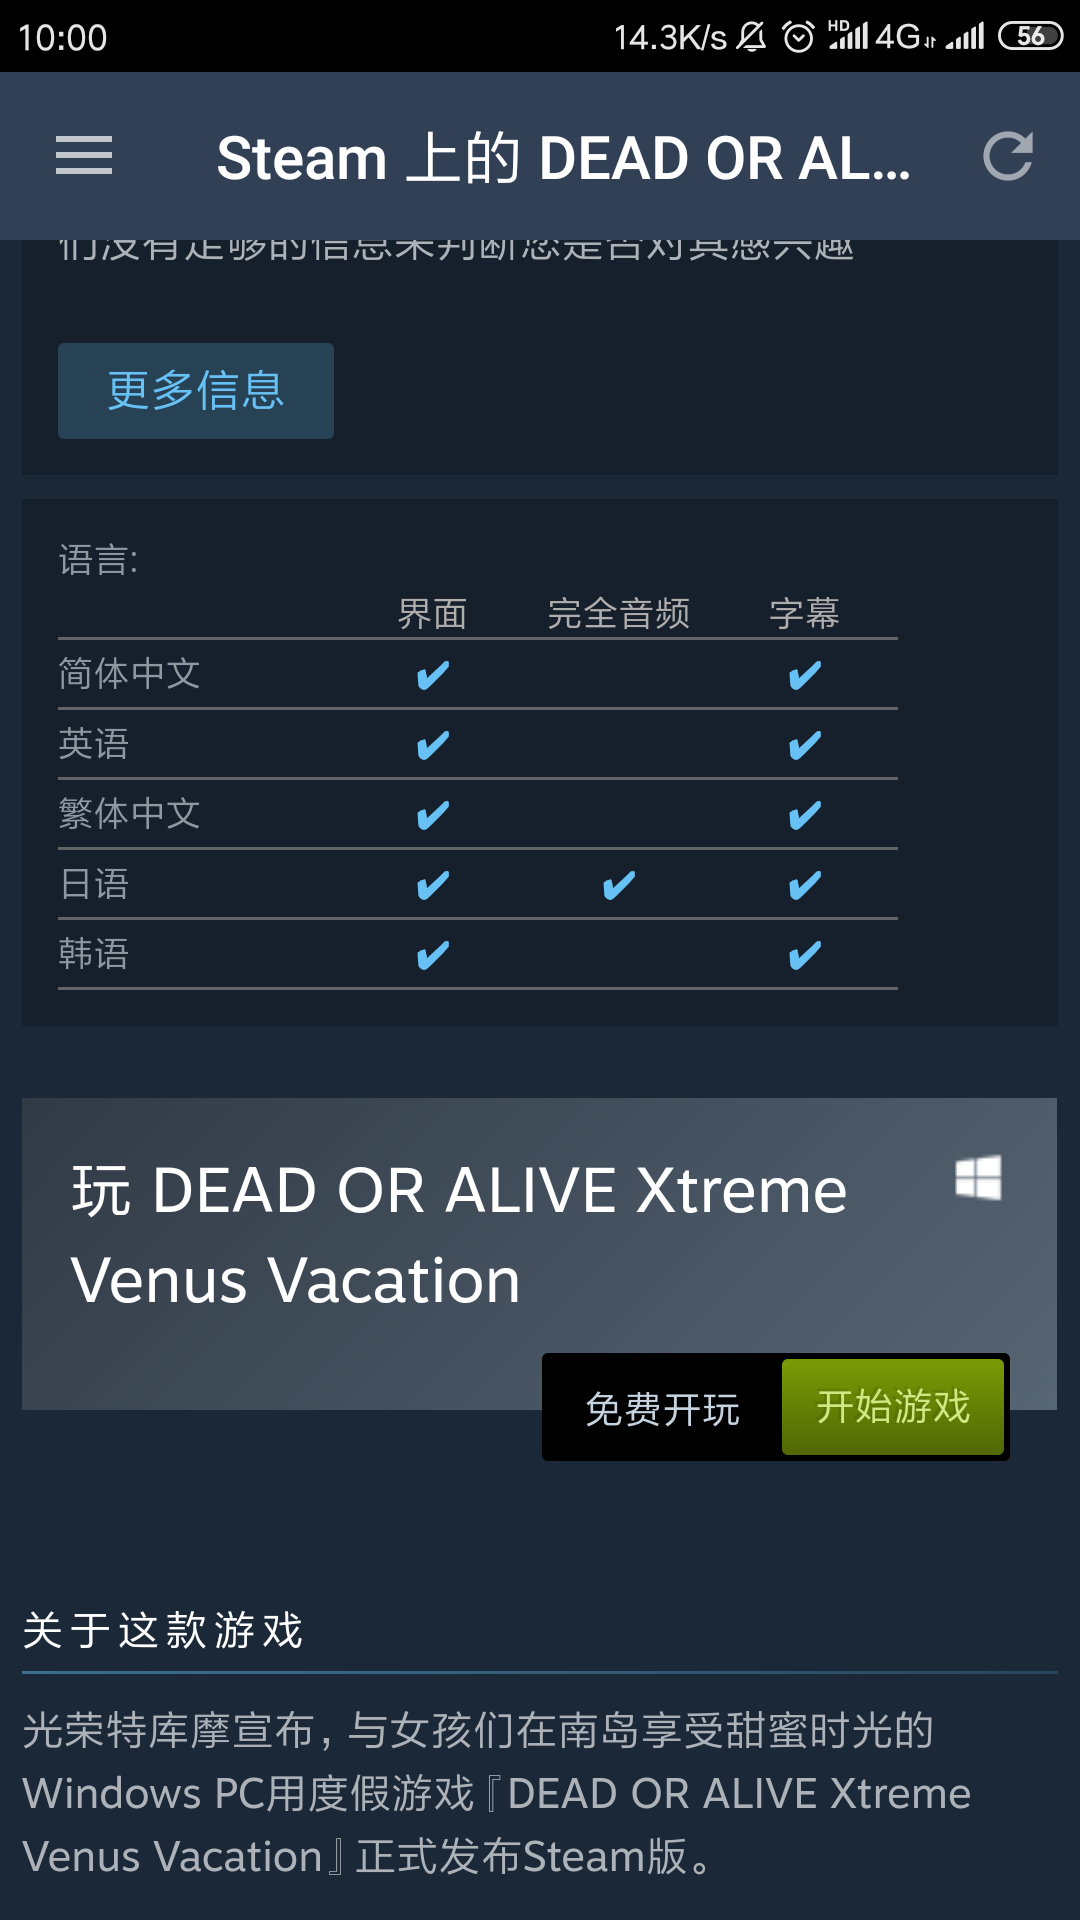 商店页面 dead or alive xtreme venus vacation